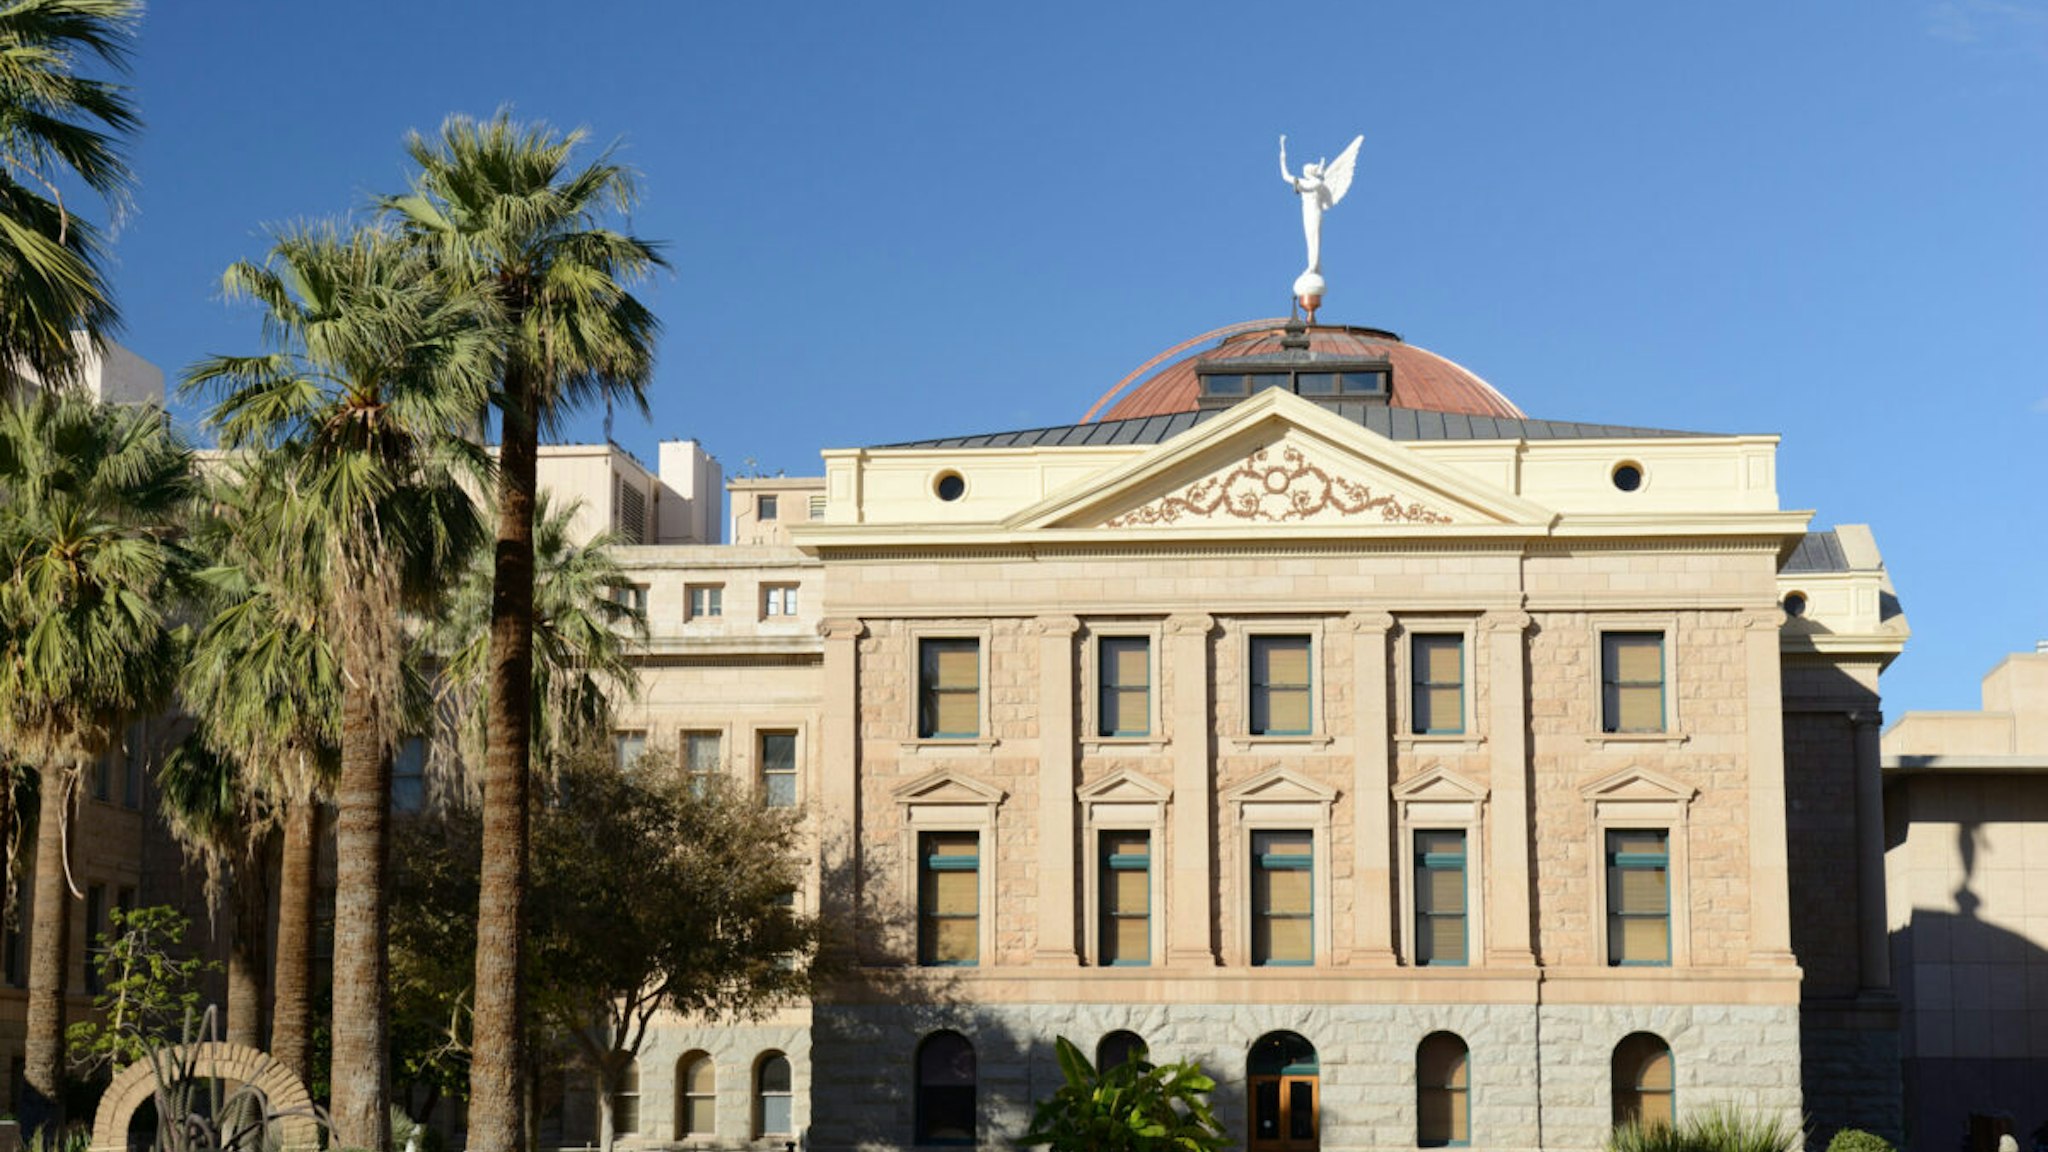 Arizona State Capitol in Phoenix, Arizona, USA